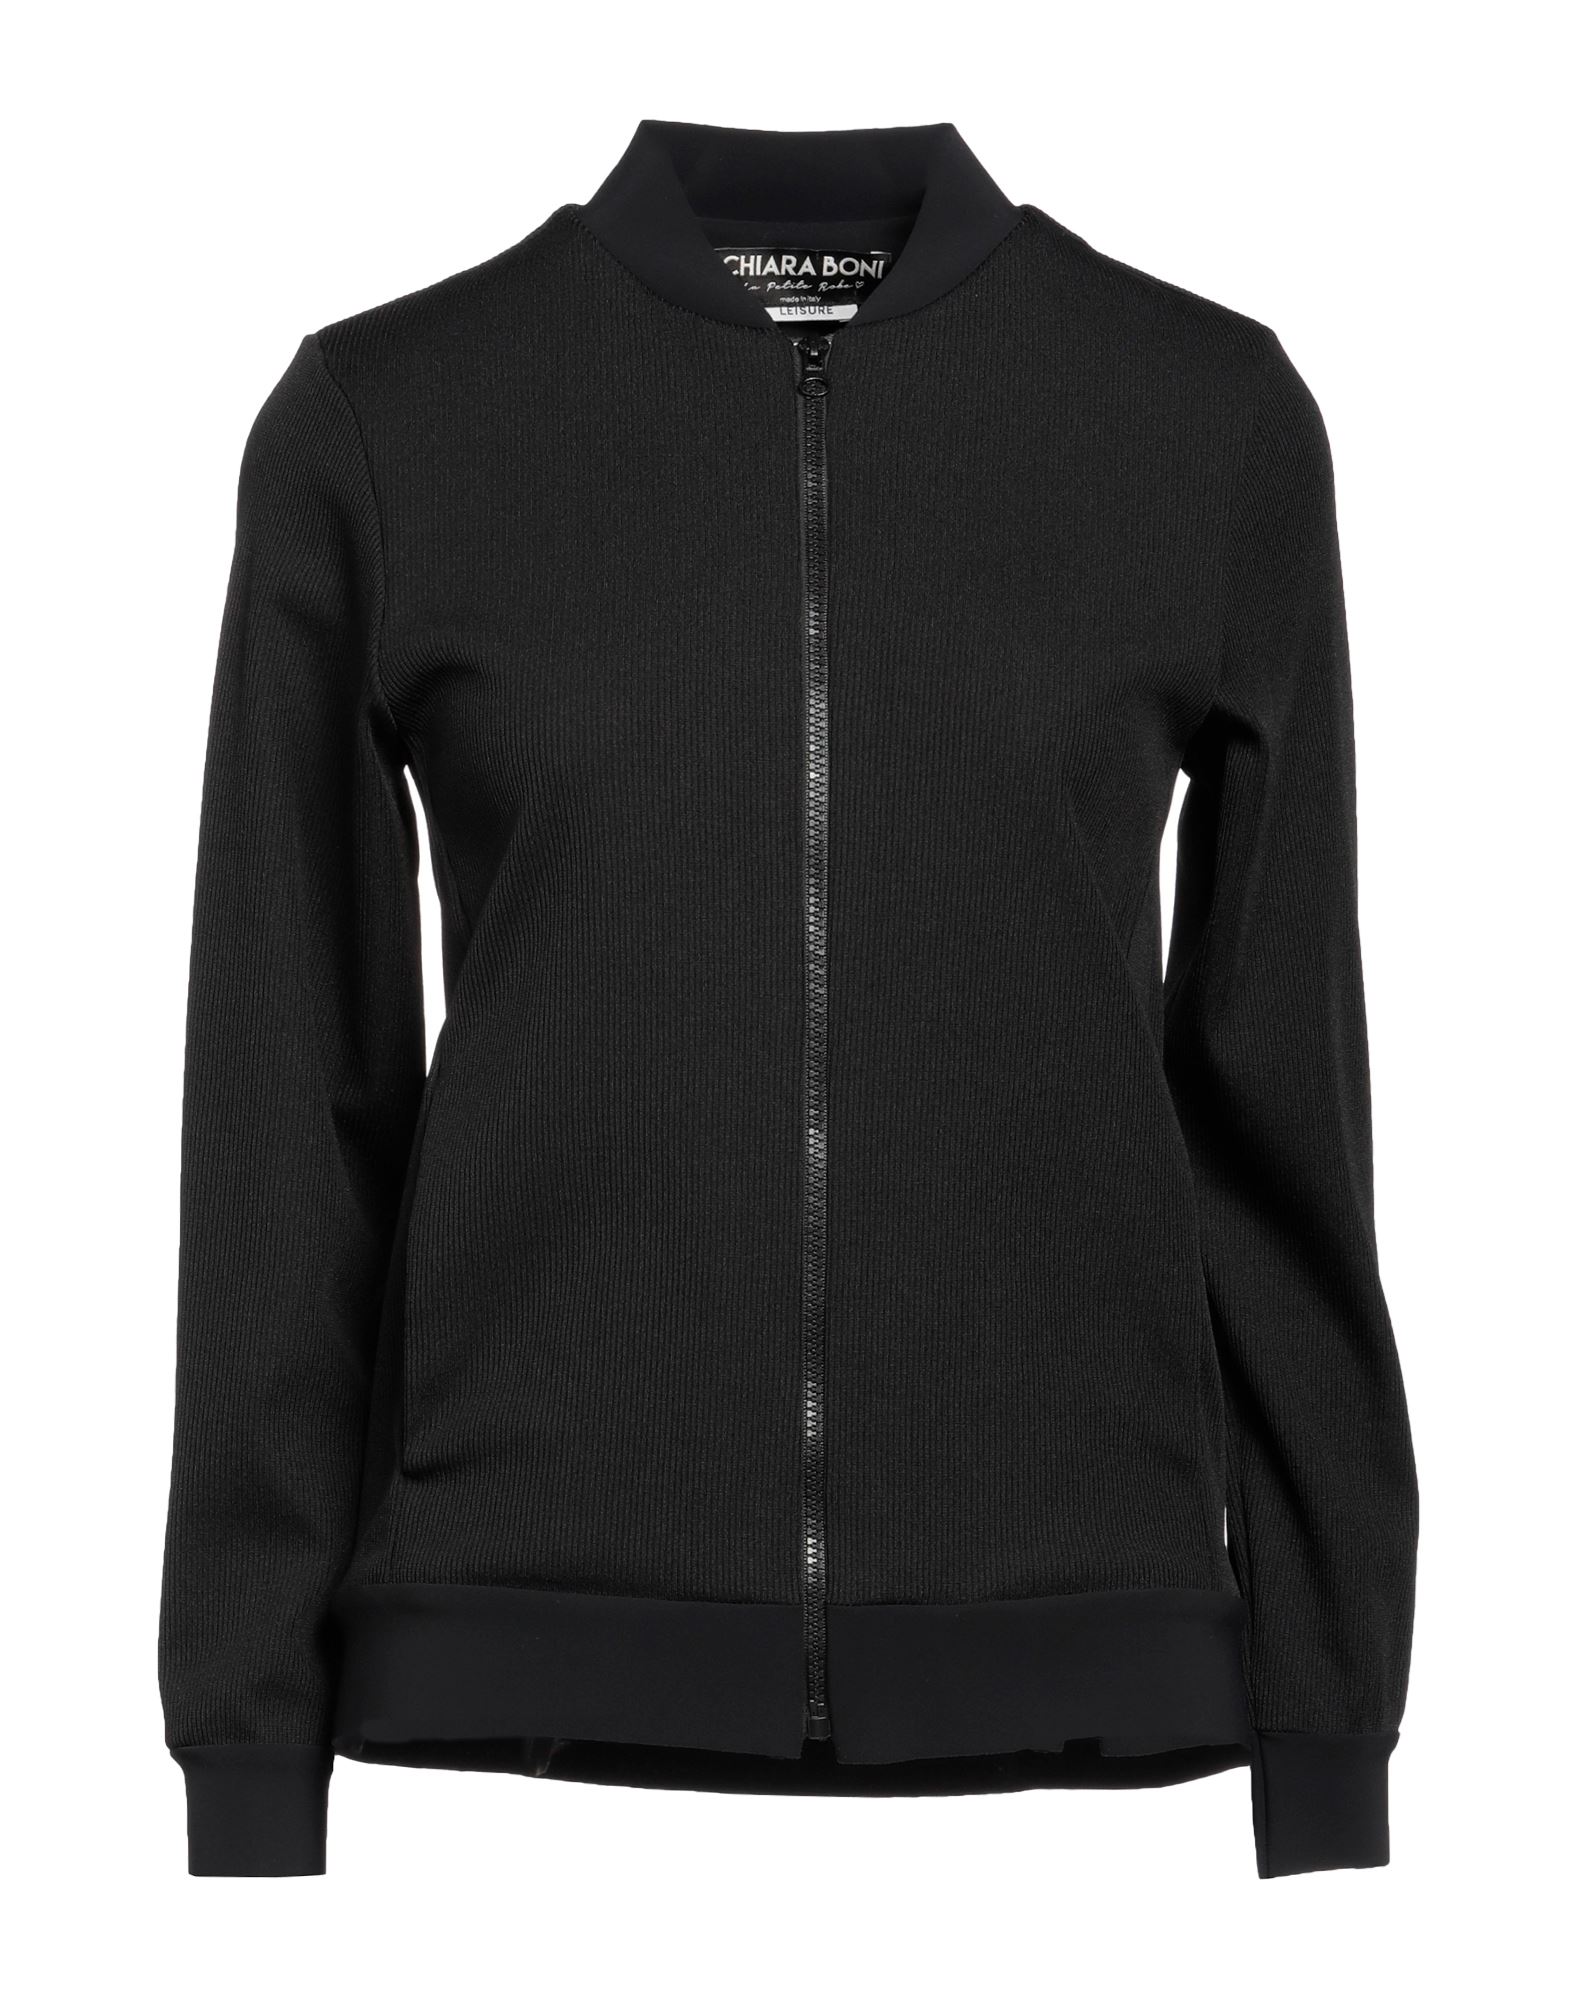 Chiara Boni La Petite Robe Sweatshirts In Black